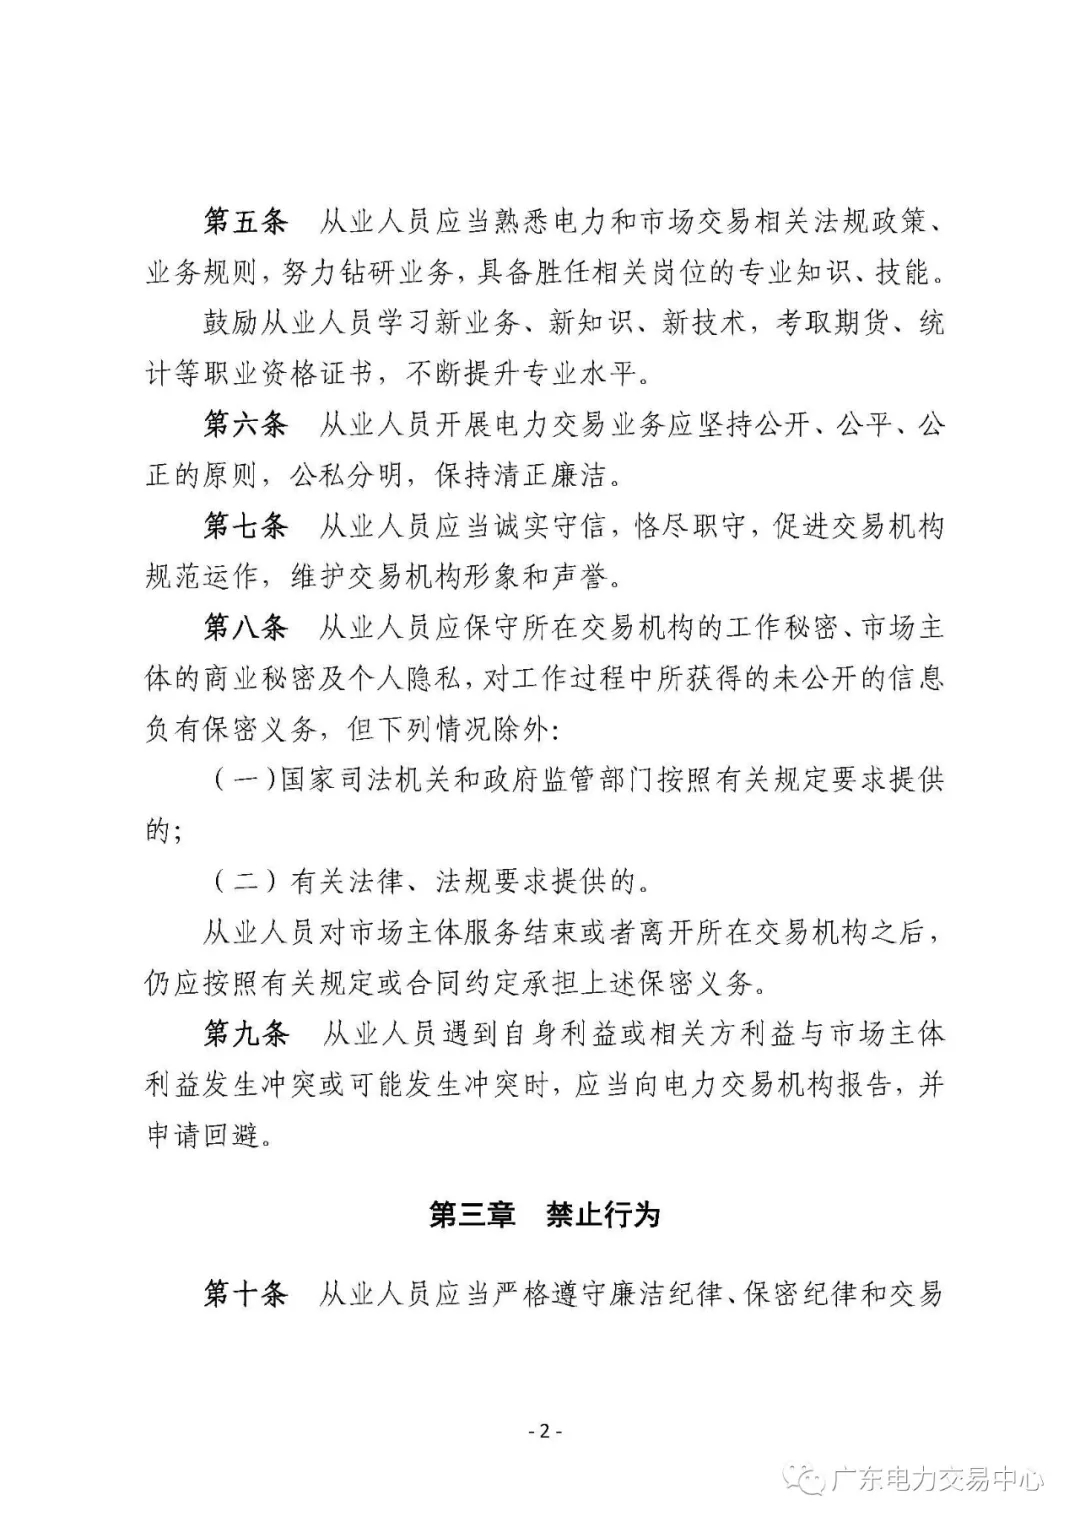 广州电力交易中心从业人员行为规范：禁止接受市场主体的委托以本人或他人名义参加电力交易